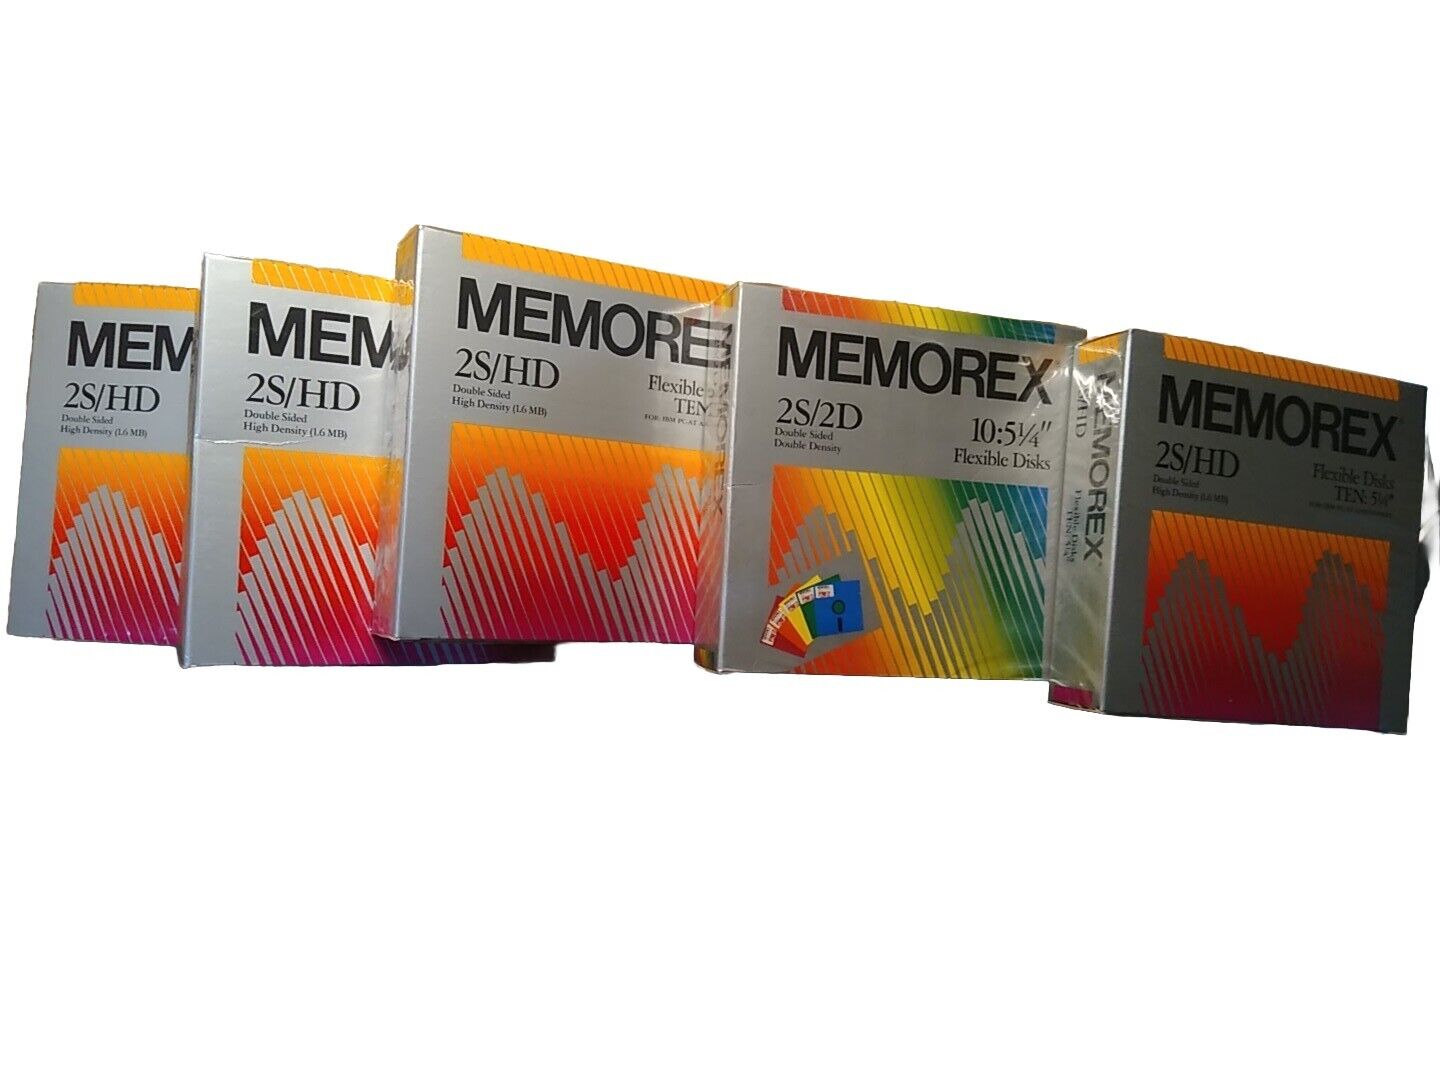 50 Memorex floppy disks 5.25 5 1/4 5660 5227 Vintage Computer Old Stock Lot Set